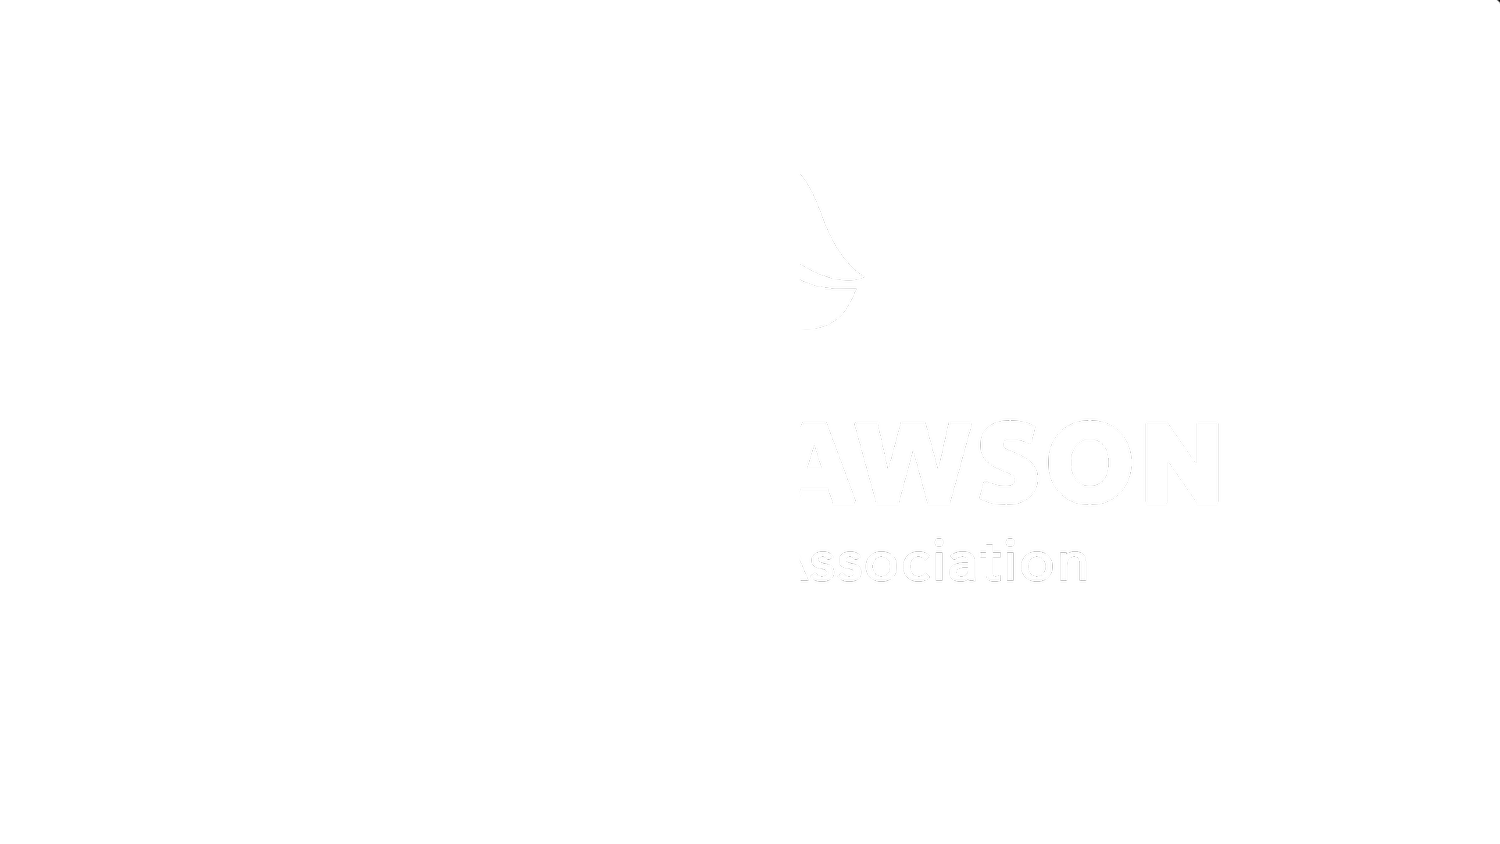 Scott Dawson Evangelistic Association